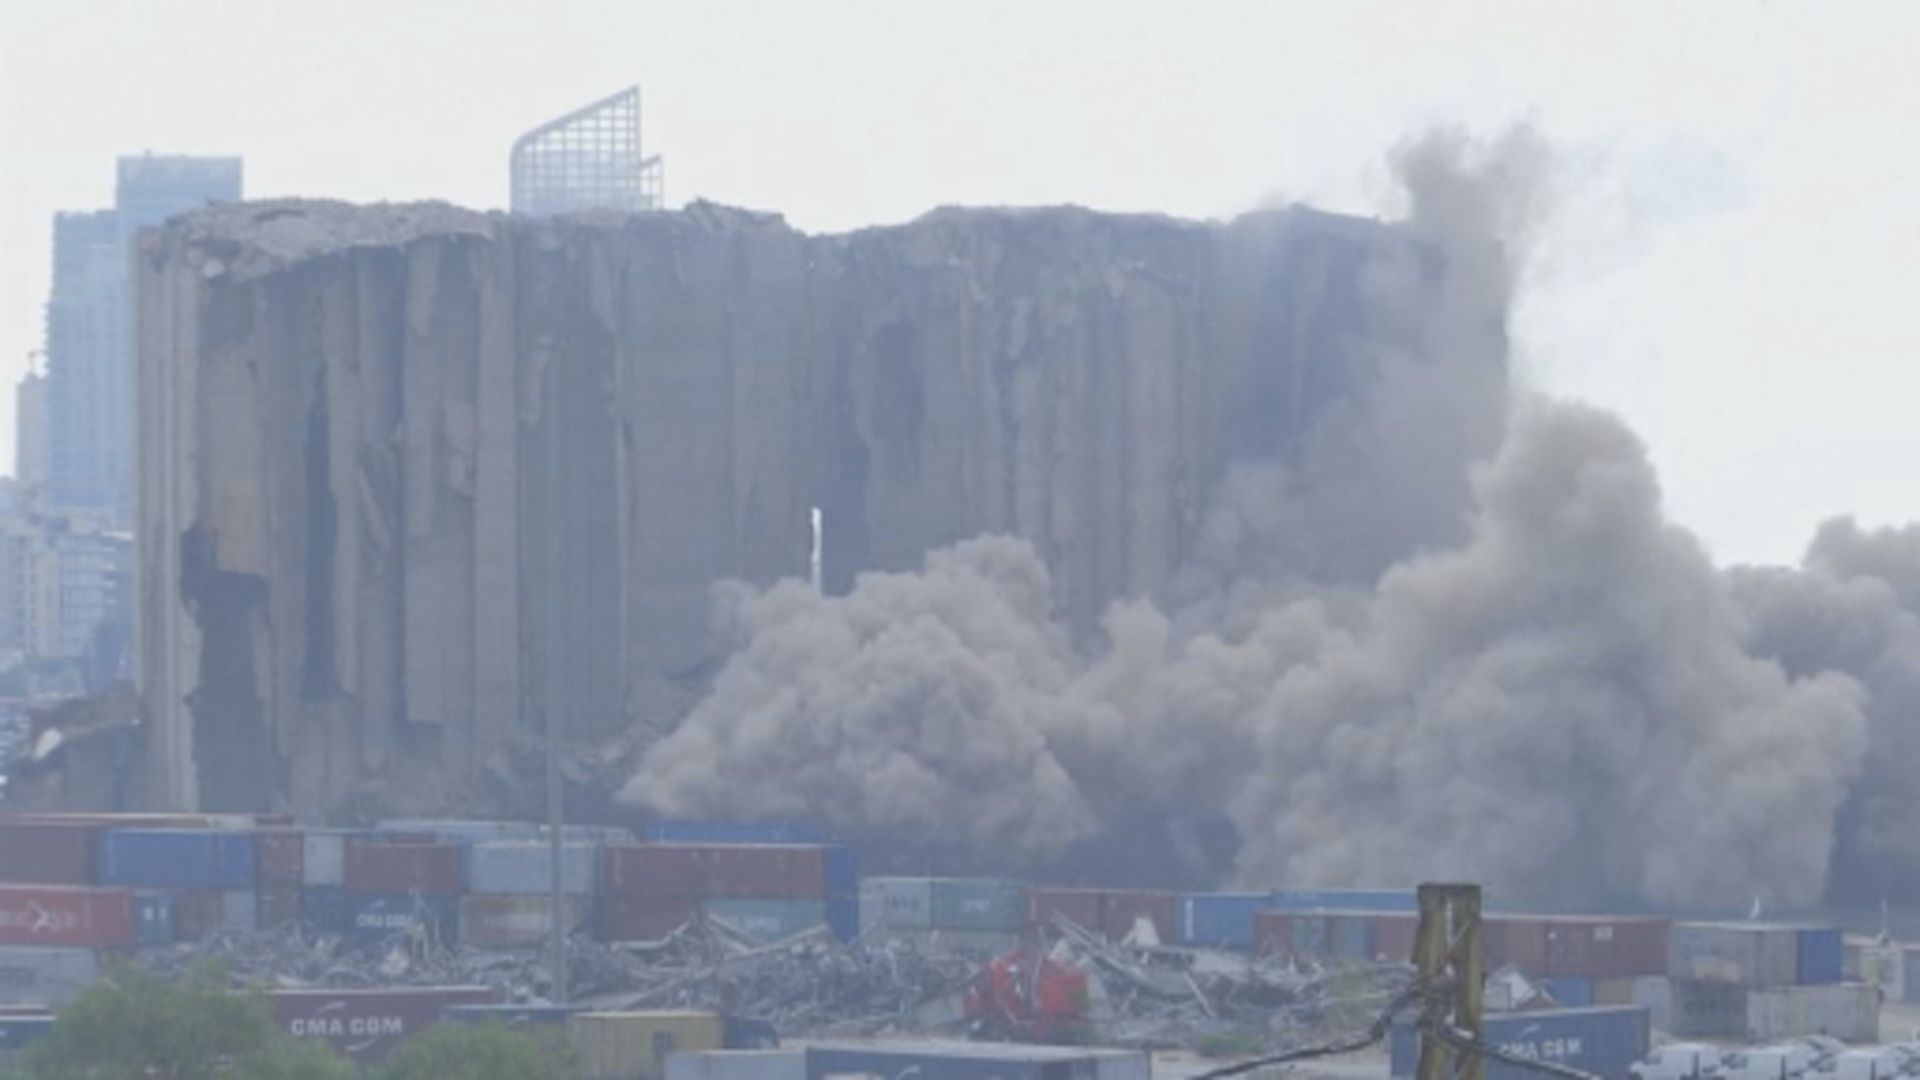 貝魯特港口大爆炸中受損倉庫局部結構倒塌